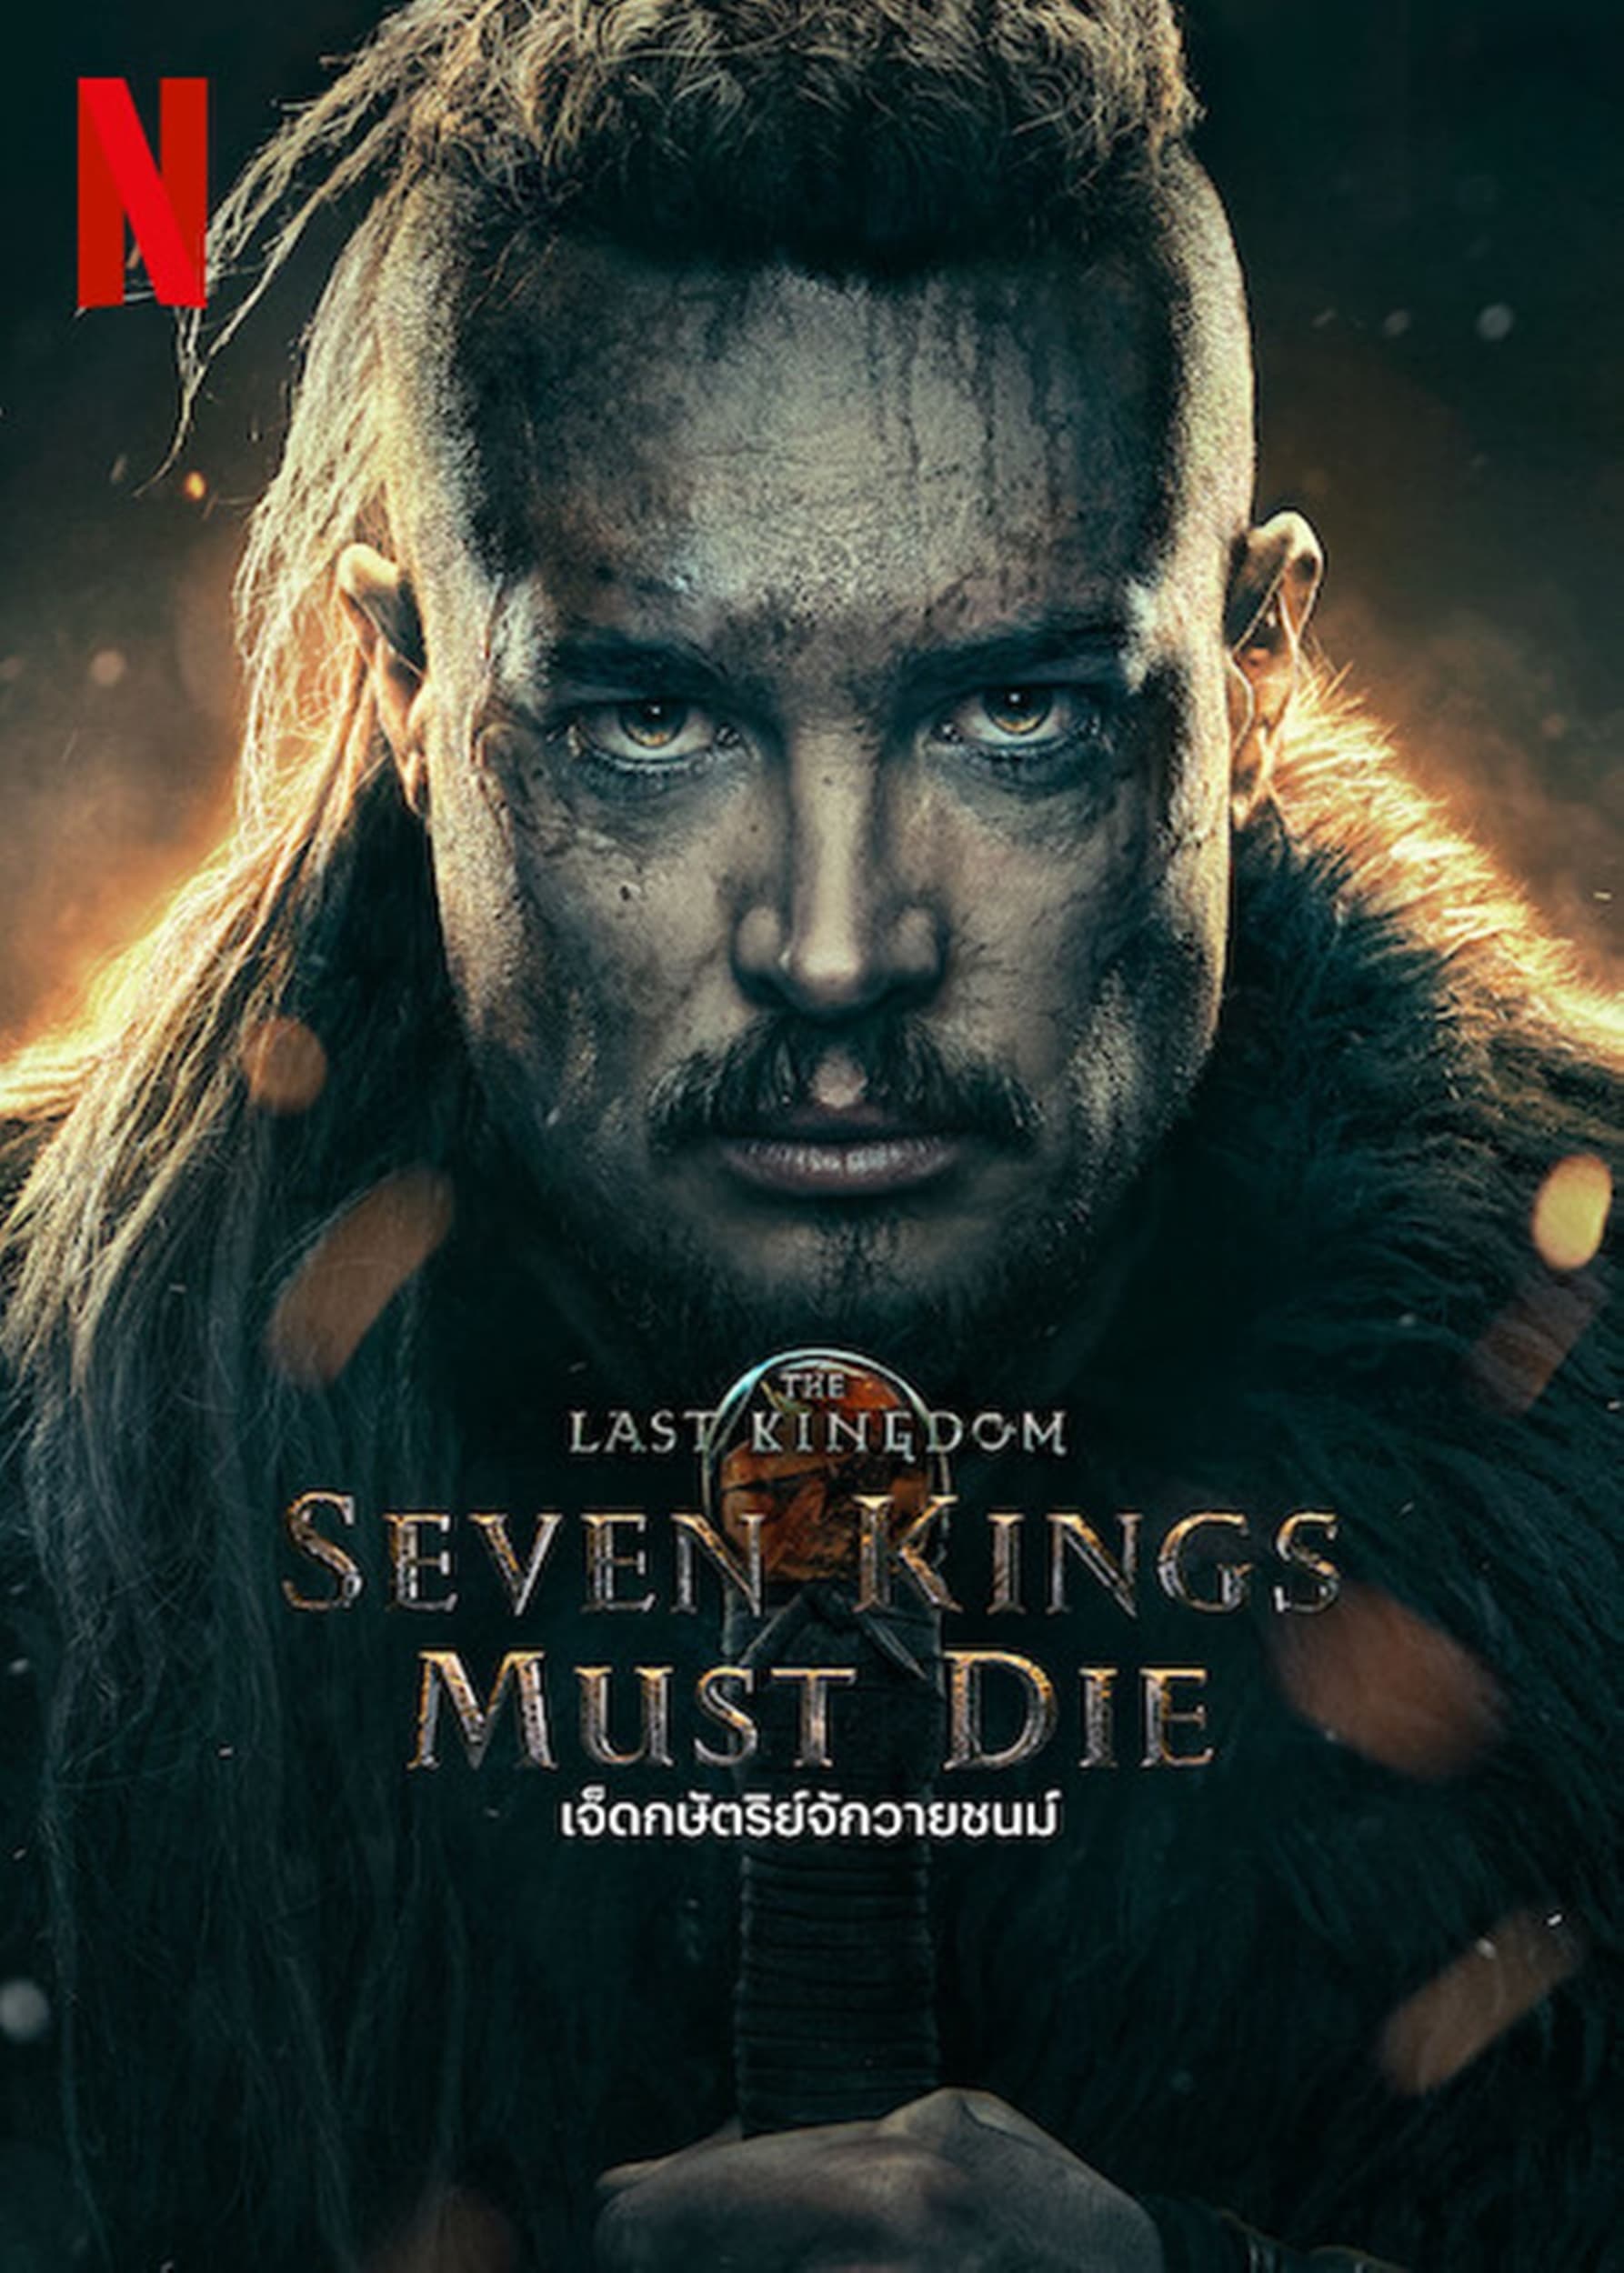 ดูหนังออนไลน์ฟรี The Last Kingdom Seven Kings Must Die